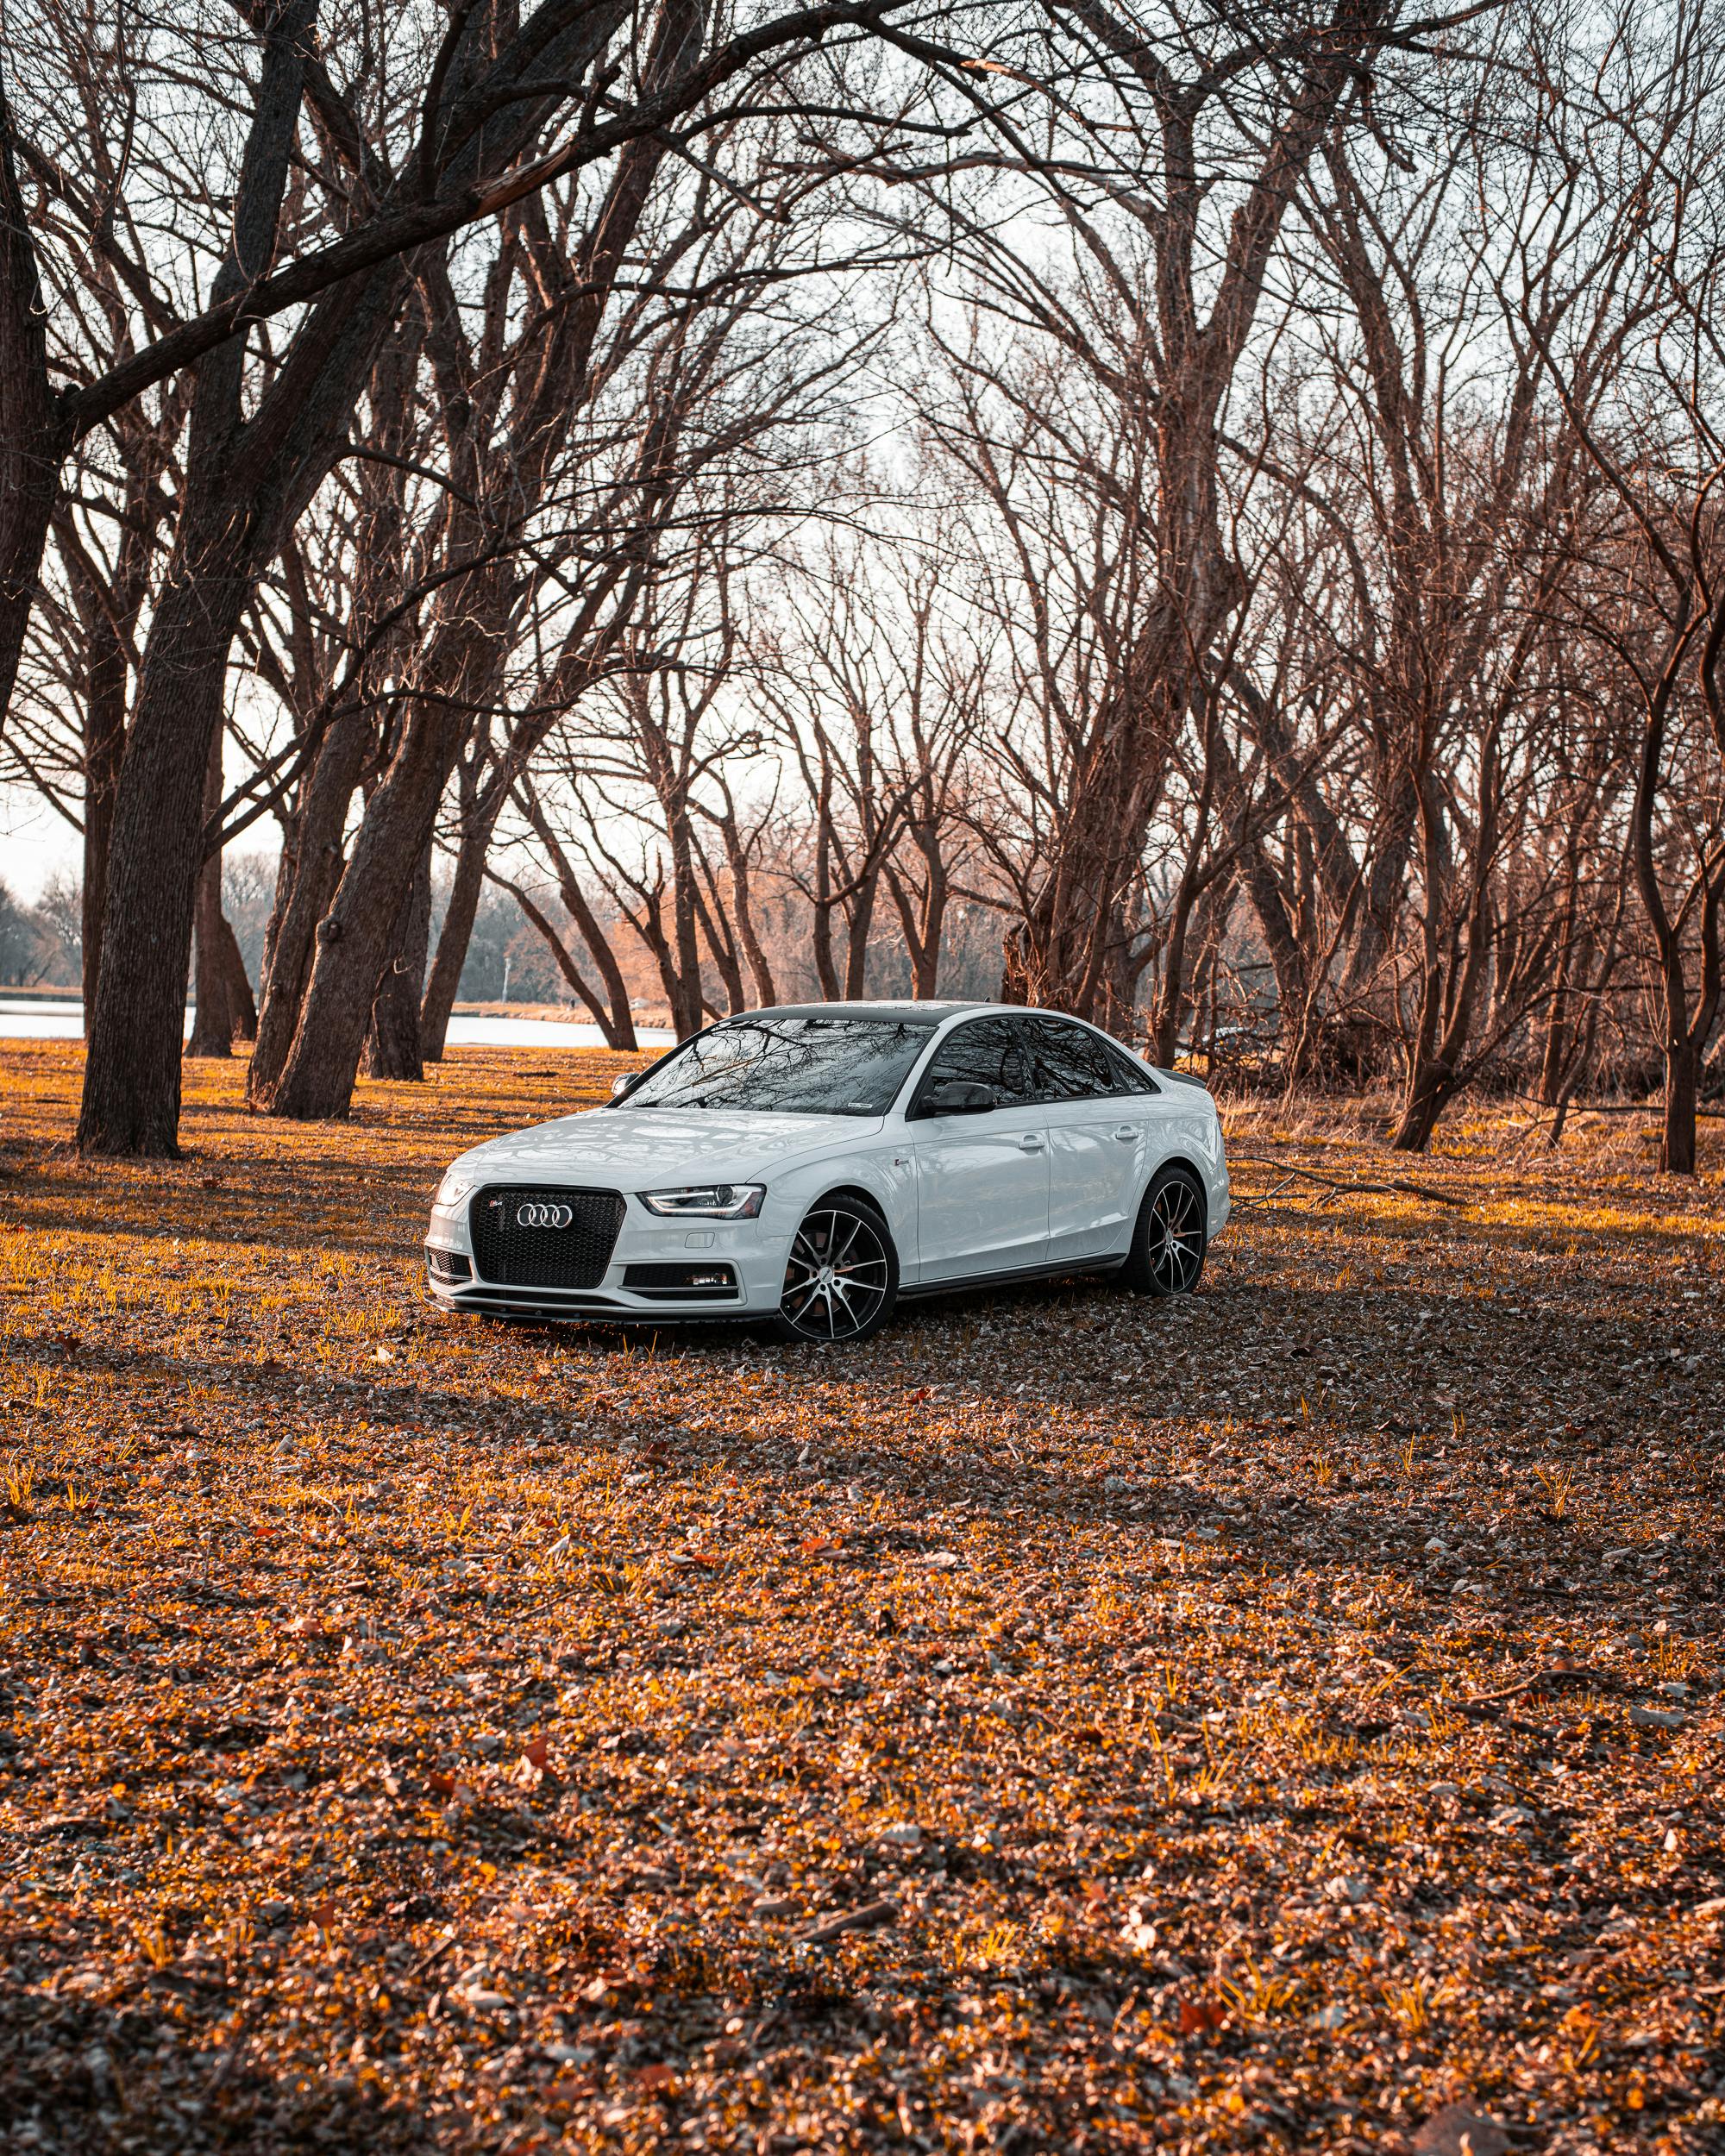 Nếu bạn là fan của xe hơi Audi, chắc hẳn sẽ rất phấn khích khi thấy những hình nền xe Audi đầy phong cách và độc đáo. Dáng xe cực kì đẹp mắt, chiếc xe này sẽ khiến ai nhìn thấy đều phải trầm trồ và thèm thuồng muốn sở hữu.